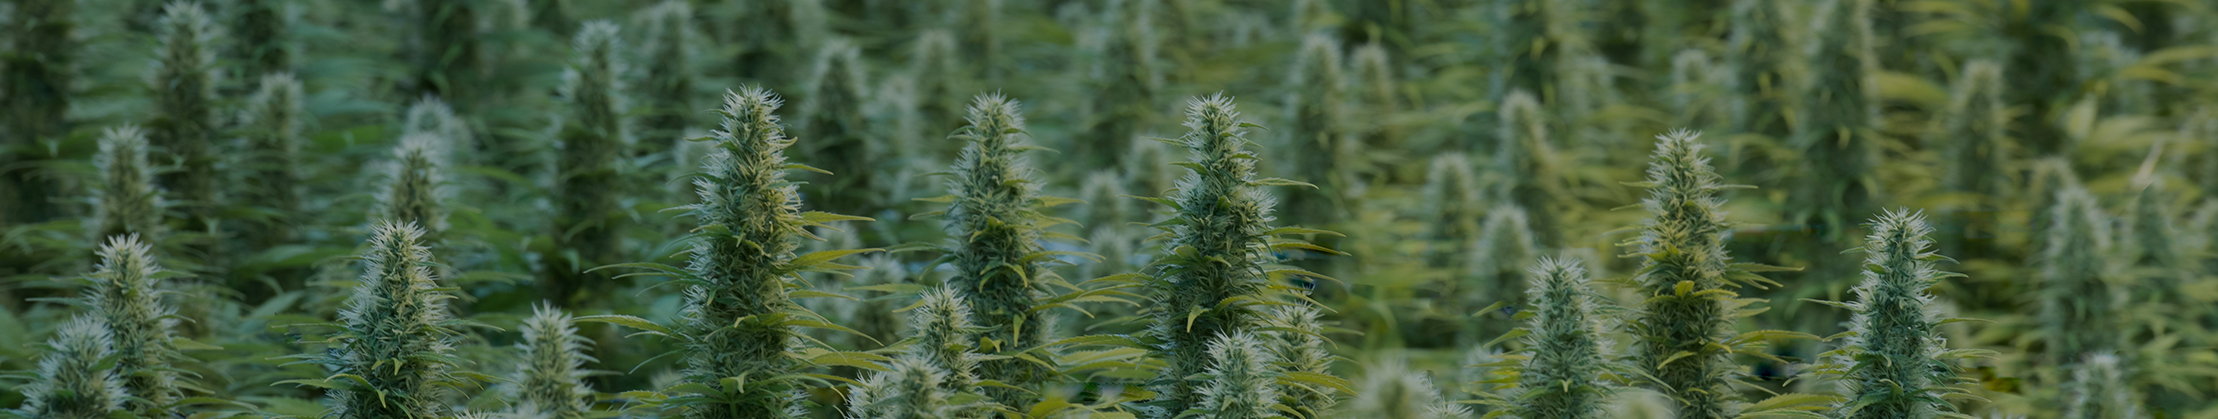 Les 5 raisons médicales les plus courantes pour consommer du Cannabis légal CBD